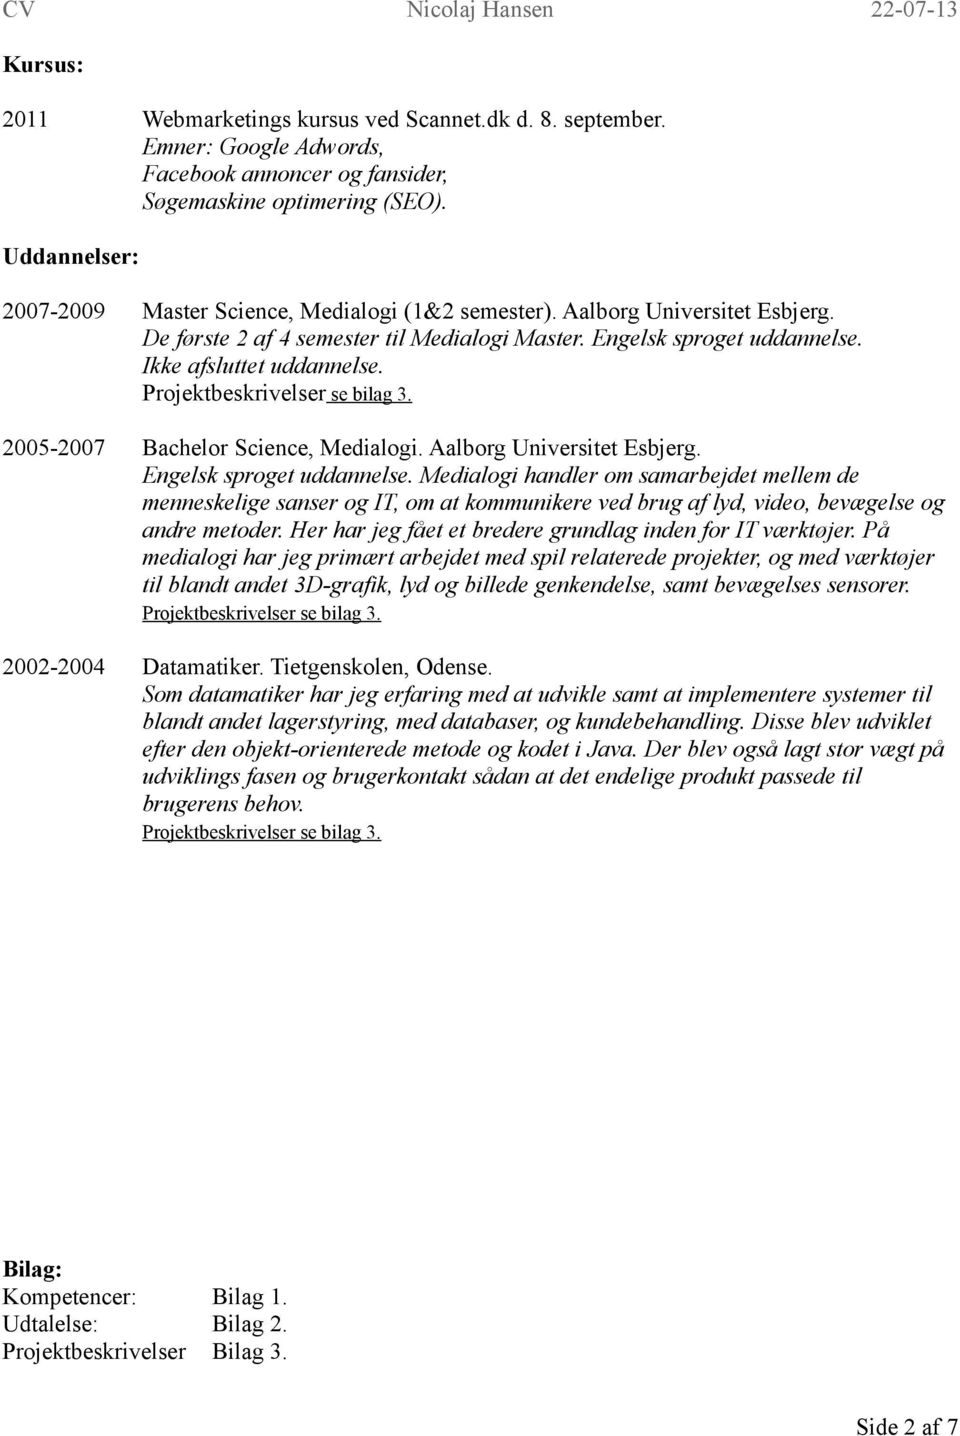 Projektbeskrivelser se bilag 3. 2005-2007 Bachelor Science, Medialogi. Aalborg Universitet Esbjerg. Engelsk sproget uddannelse.